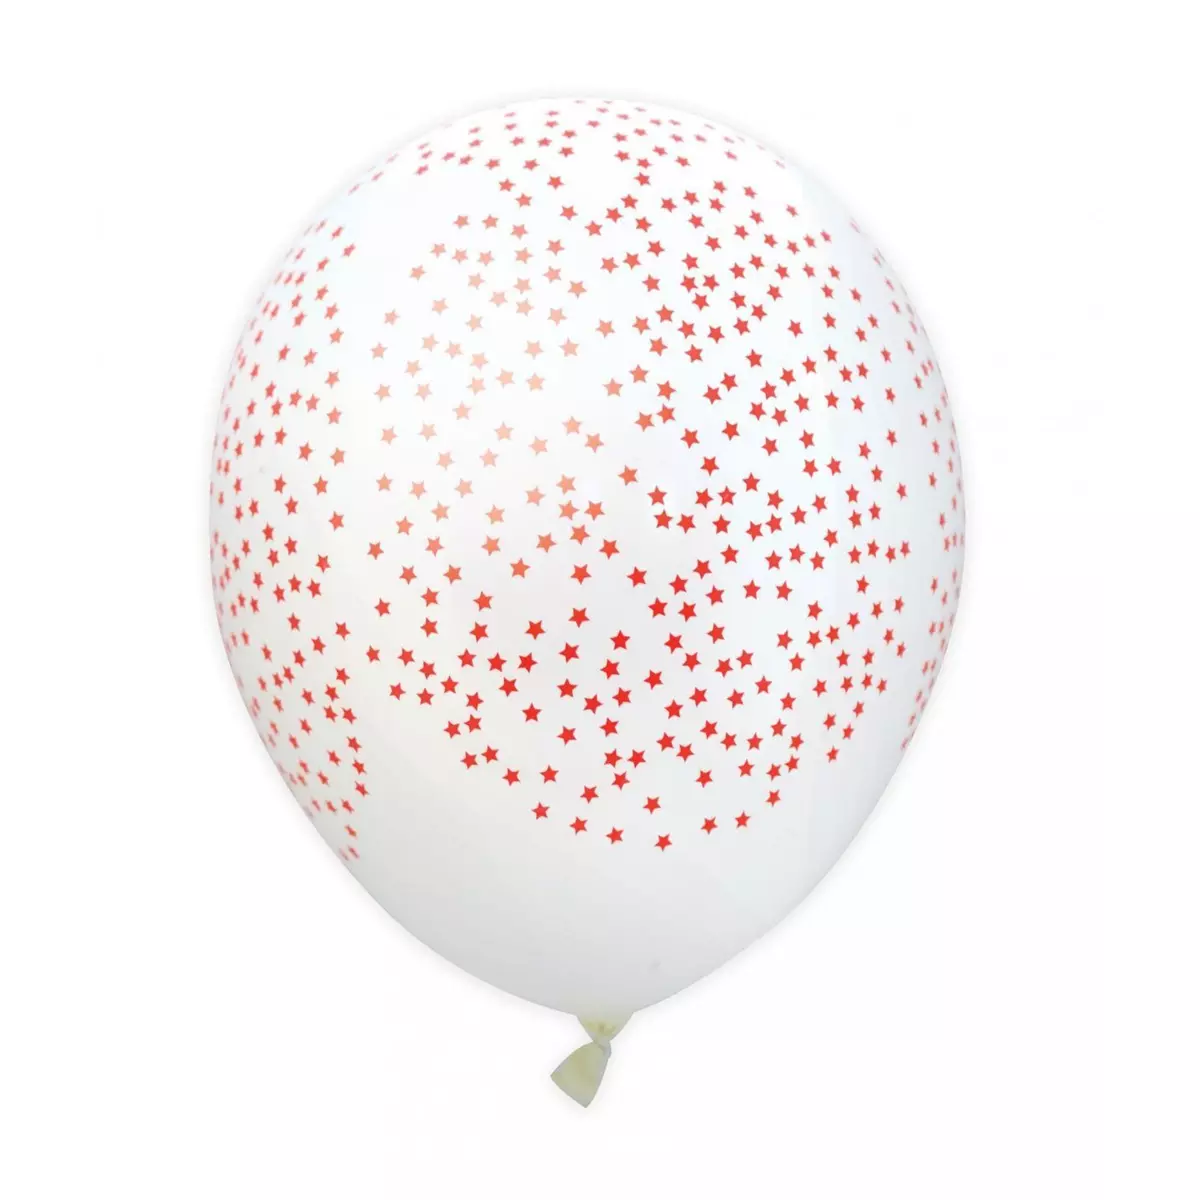 Scrapcooking Party 6 ballons de baudruche gonflables Ø 25 cm - Etoiles rouges